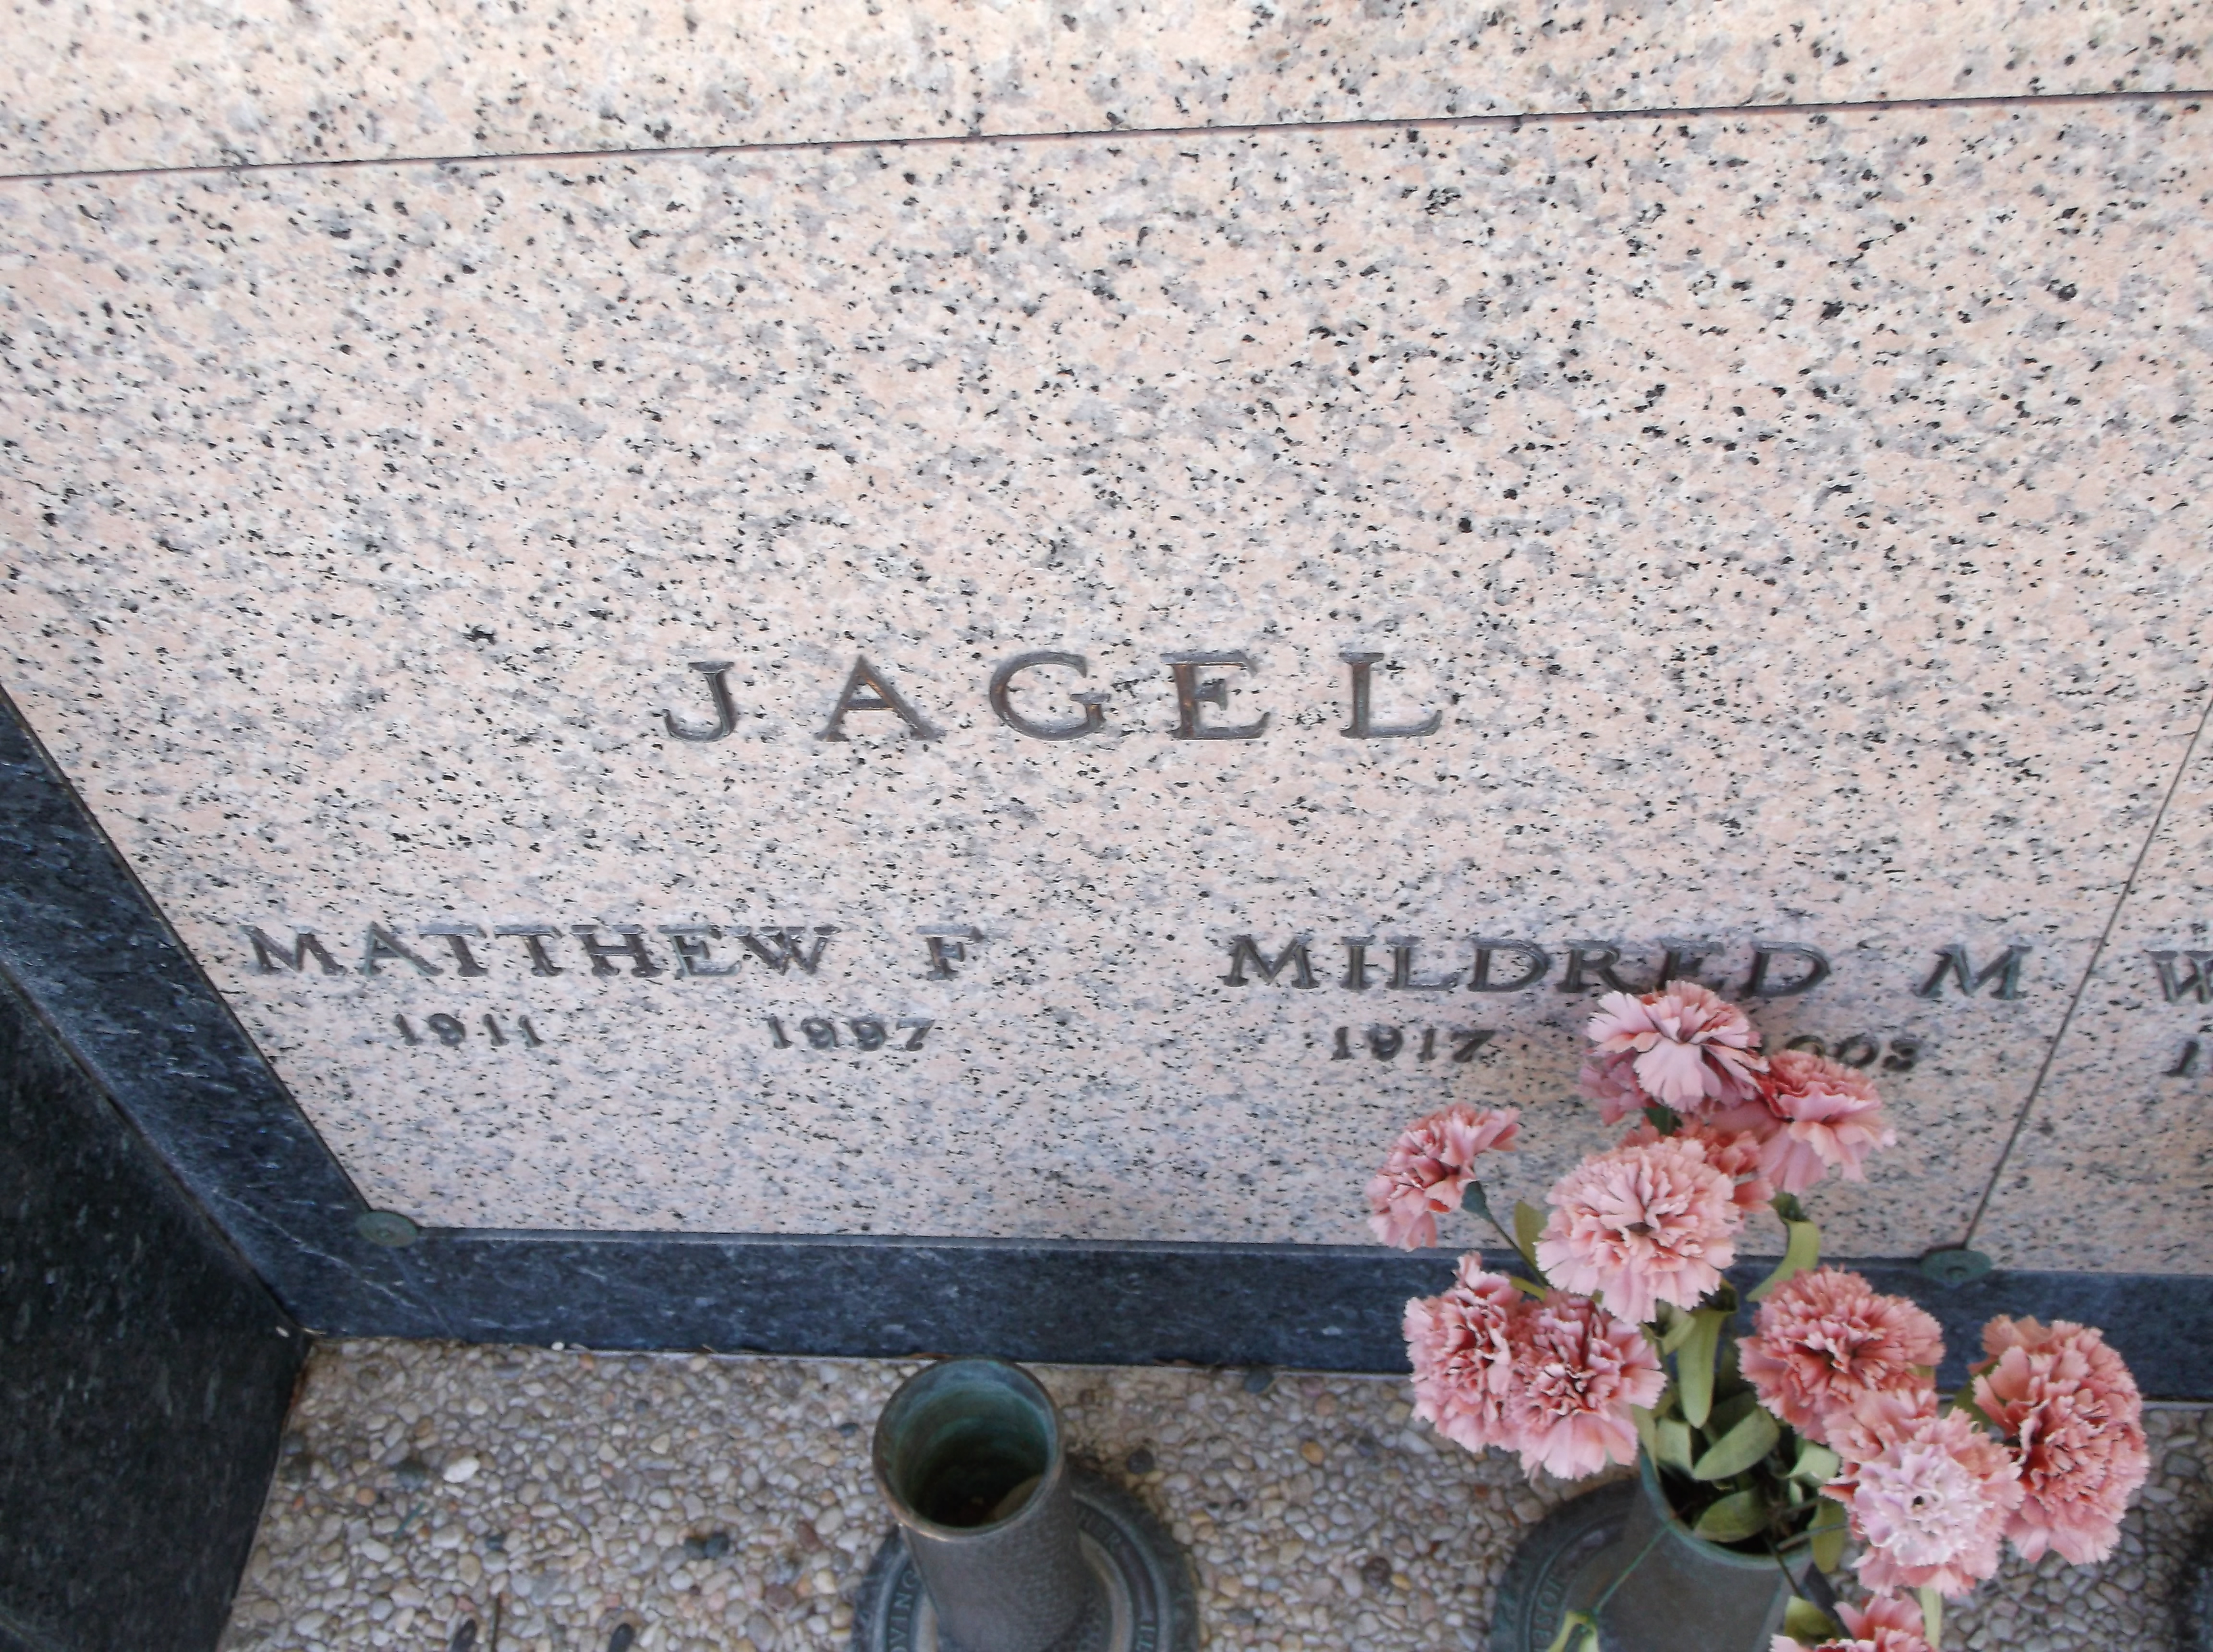 Mildred M Jagel